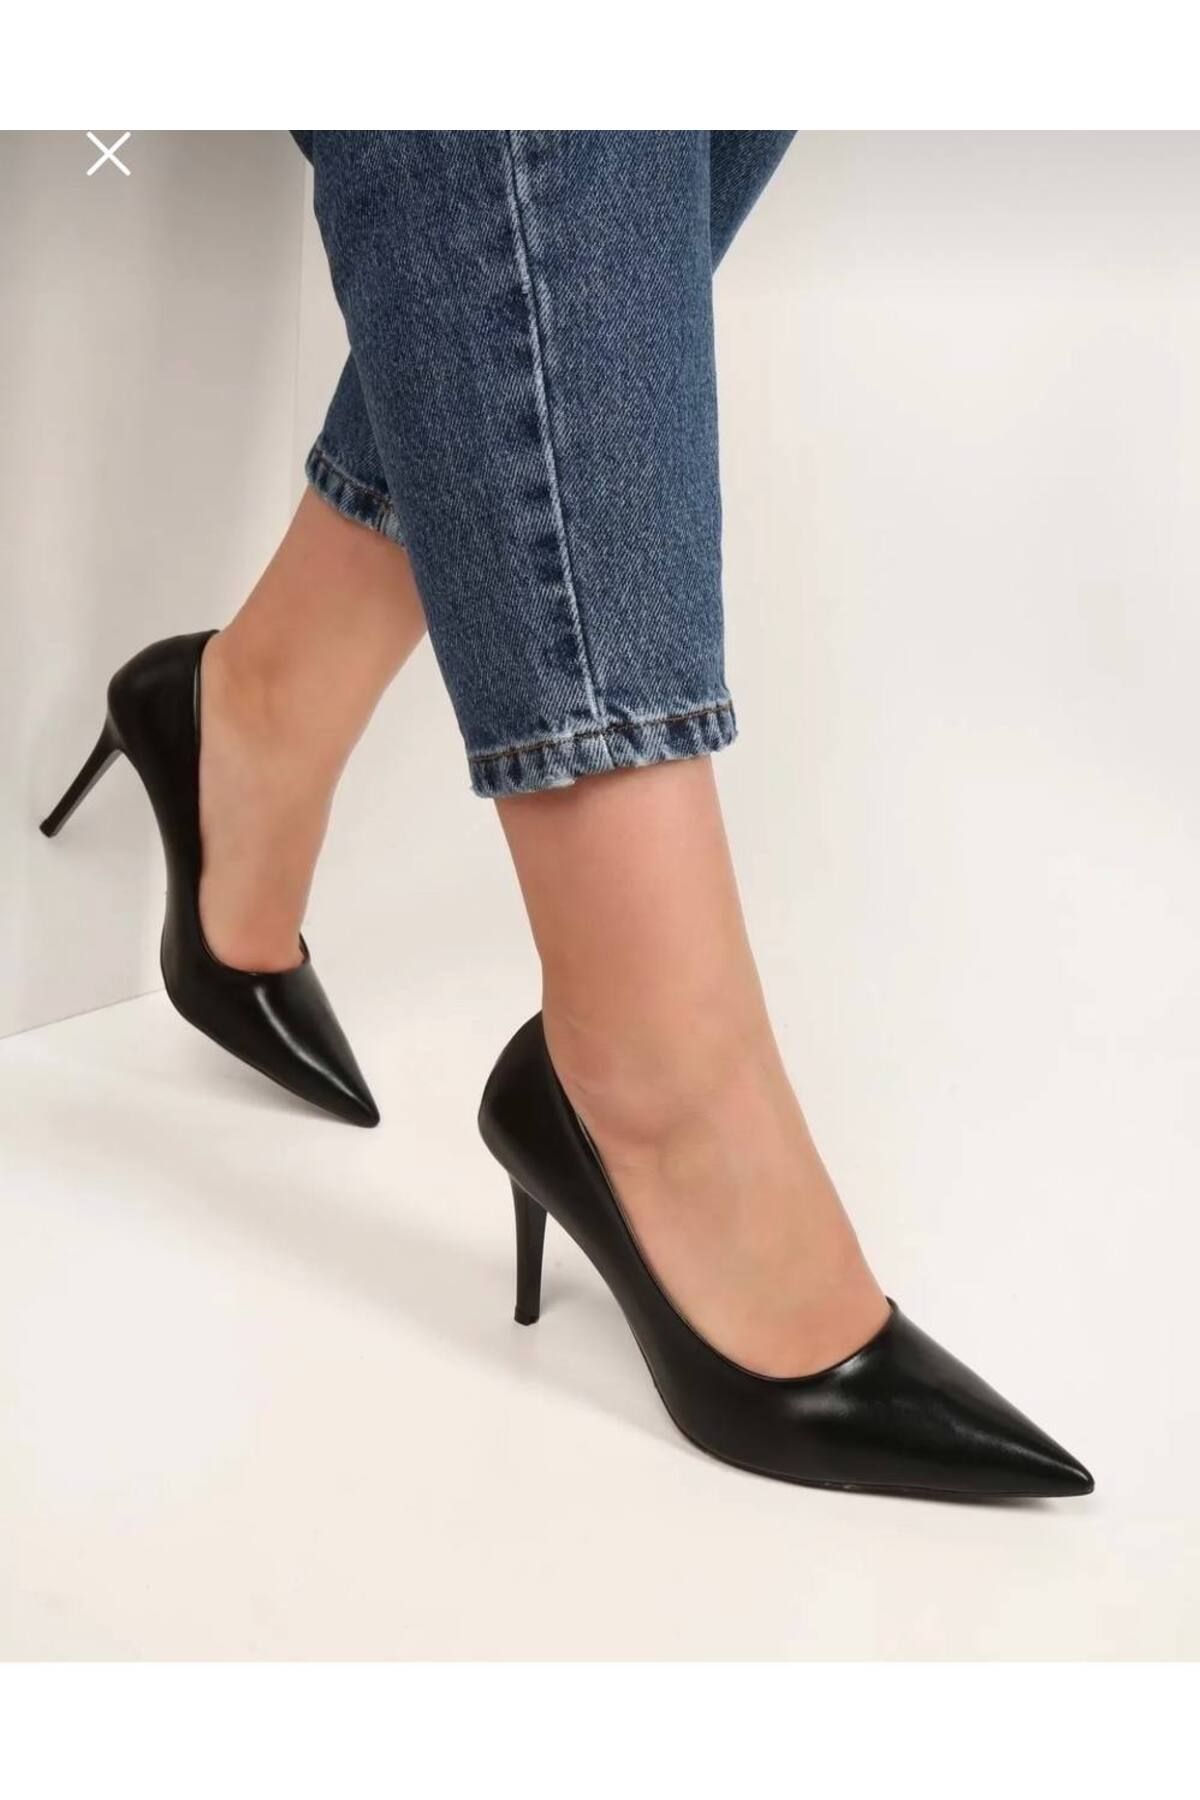 Essen kadın metalik klasik topuklu ayakkabı stiletto